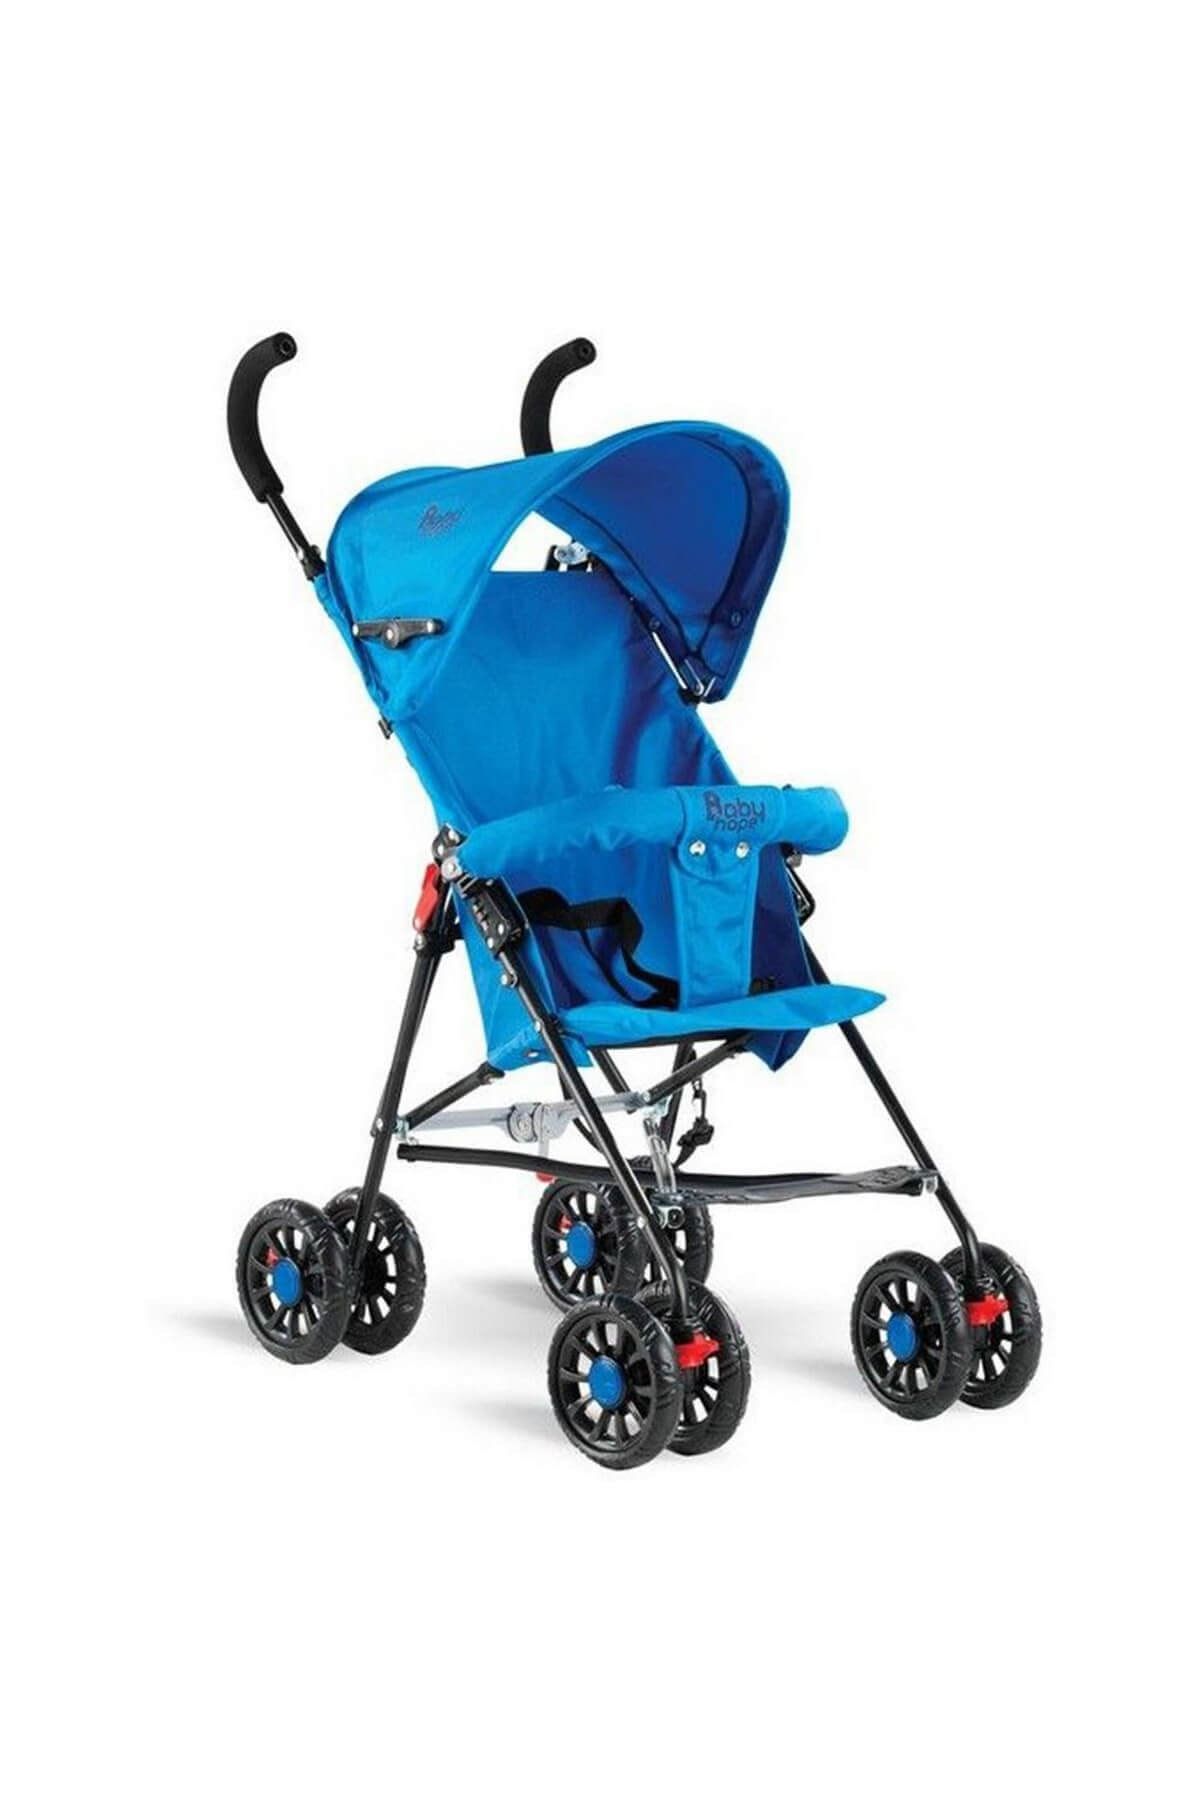 Babyhope Sc 107 Bebek Arabası Mavi